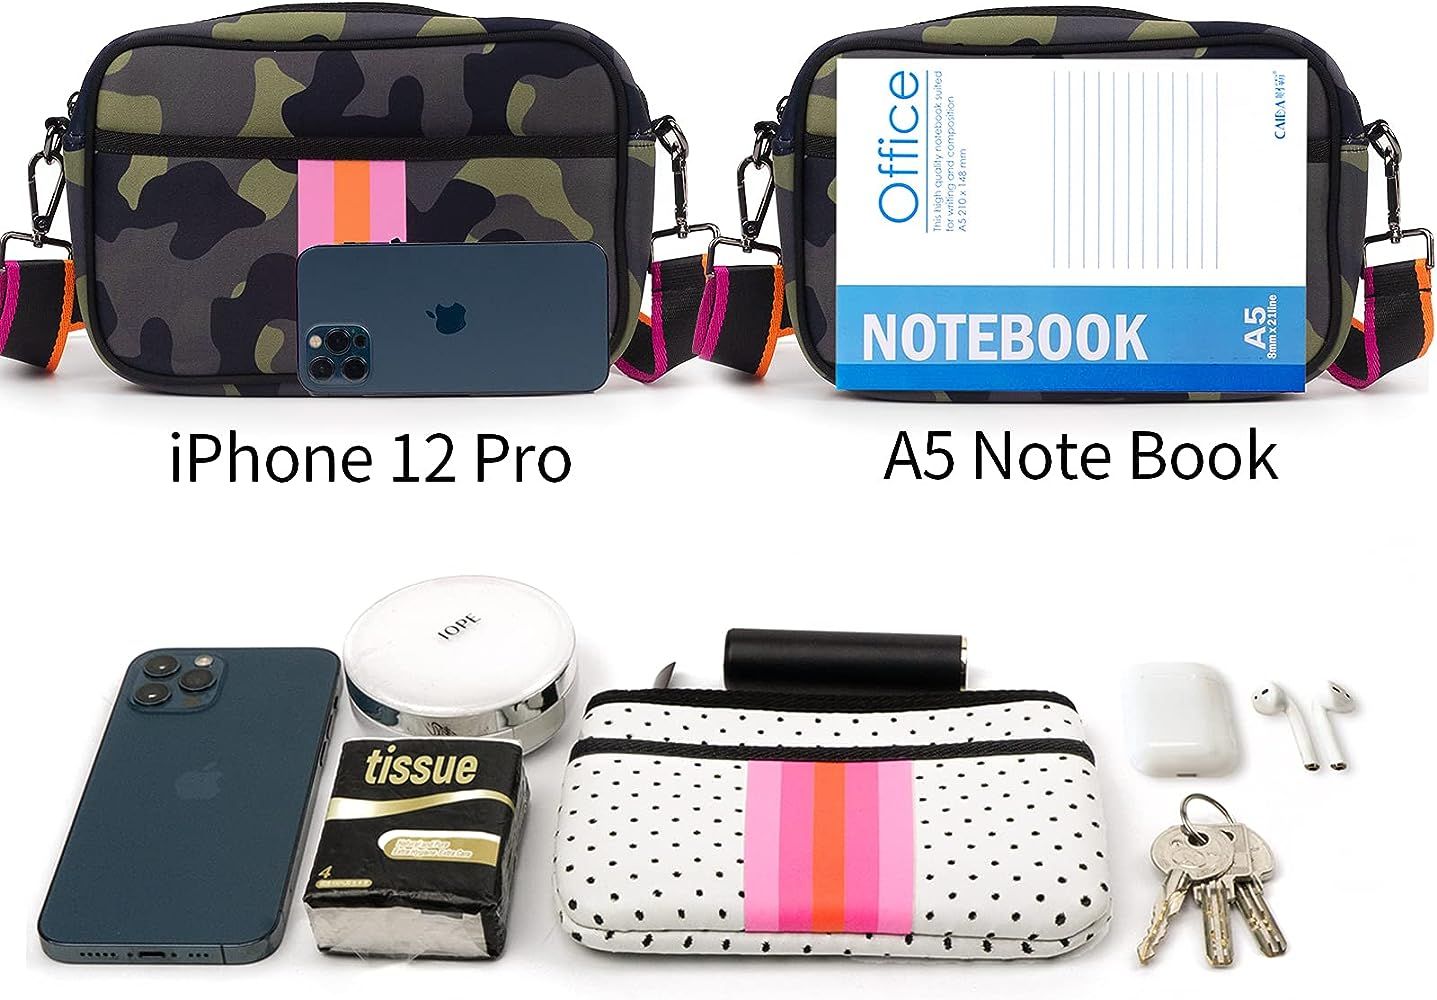 Crossbody Bags For Women,Neoprene Bag,Messenger Bag by IBEE | Amazon (US)